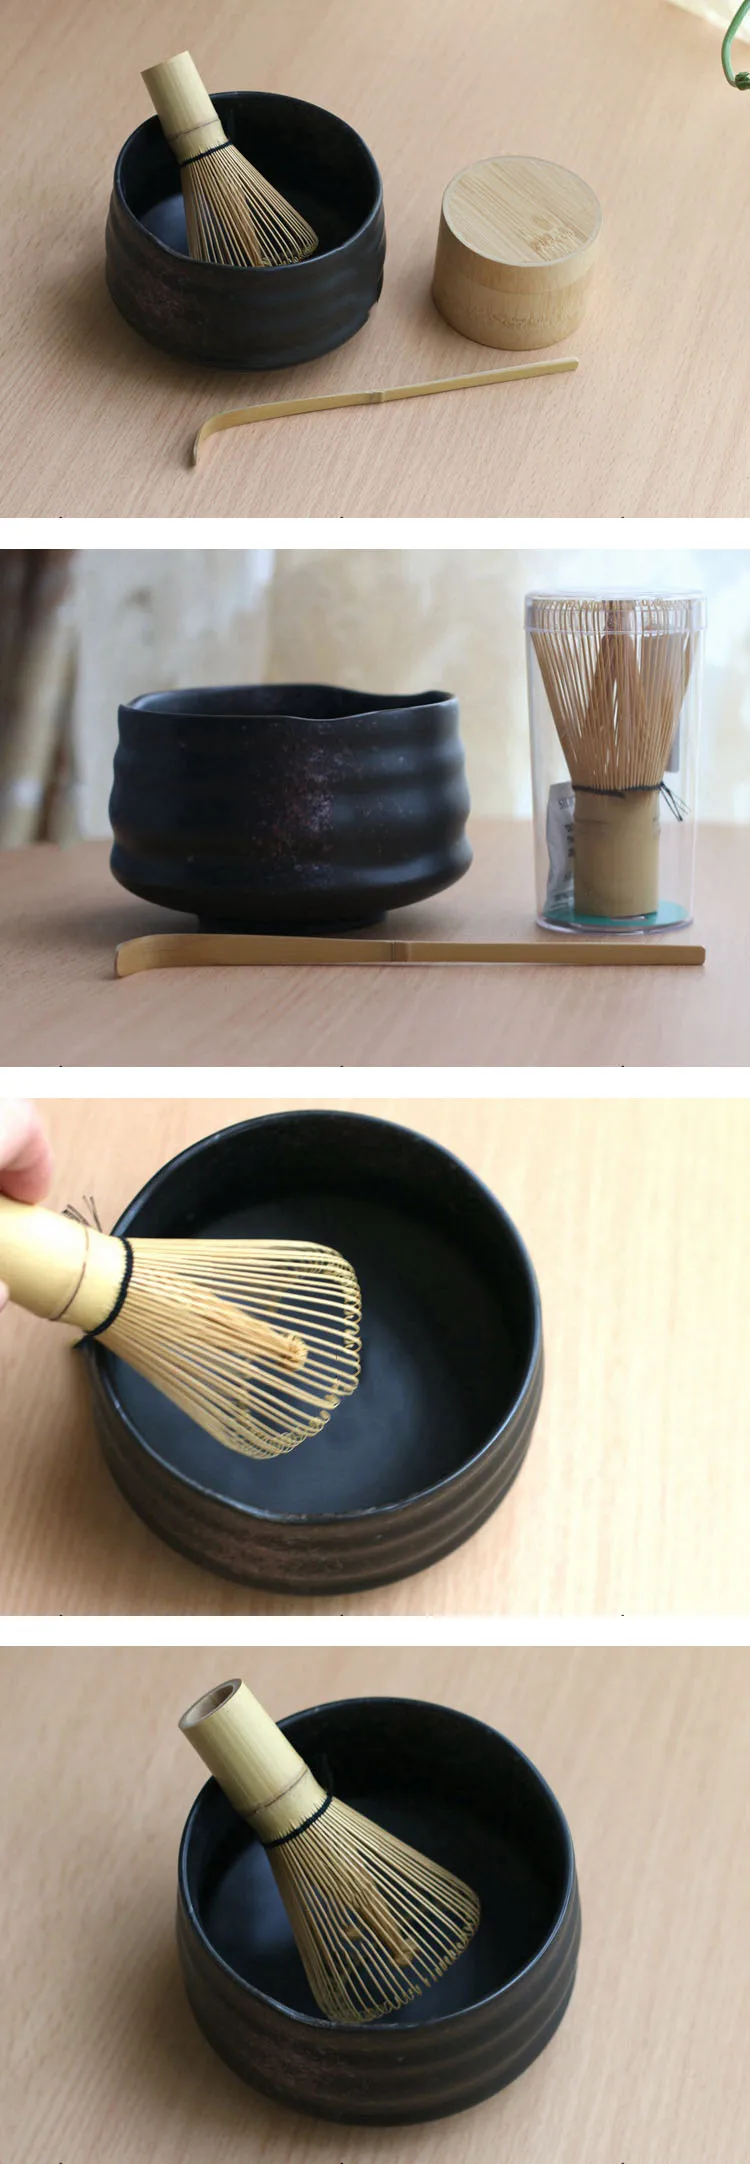 Профессиональная японская чаша для маття, венчик, совок, бамбуковый Caddy, подарочный набор, зеленый чай, пудра, чайный набор, японская чайная церемония, чайная посуда Matcha